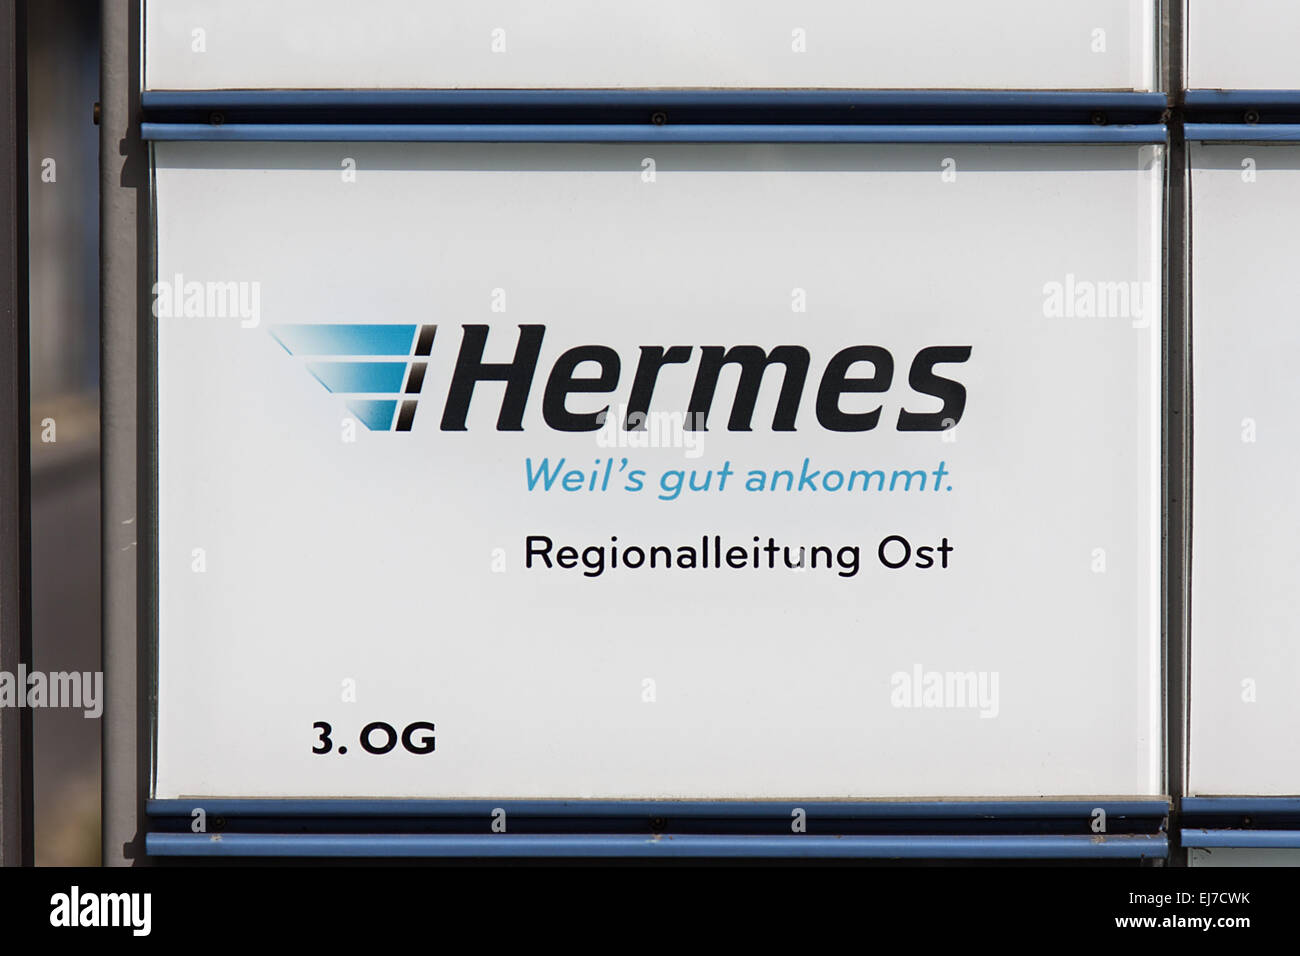 Hermes Foto de stock